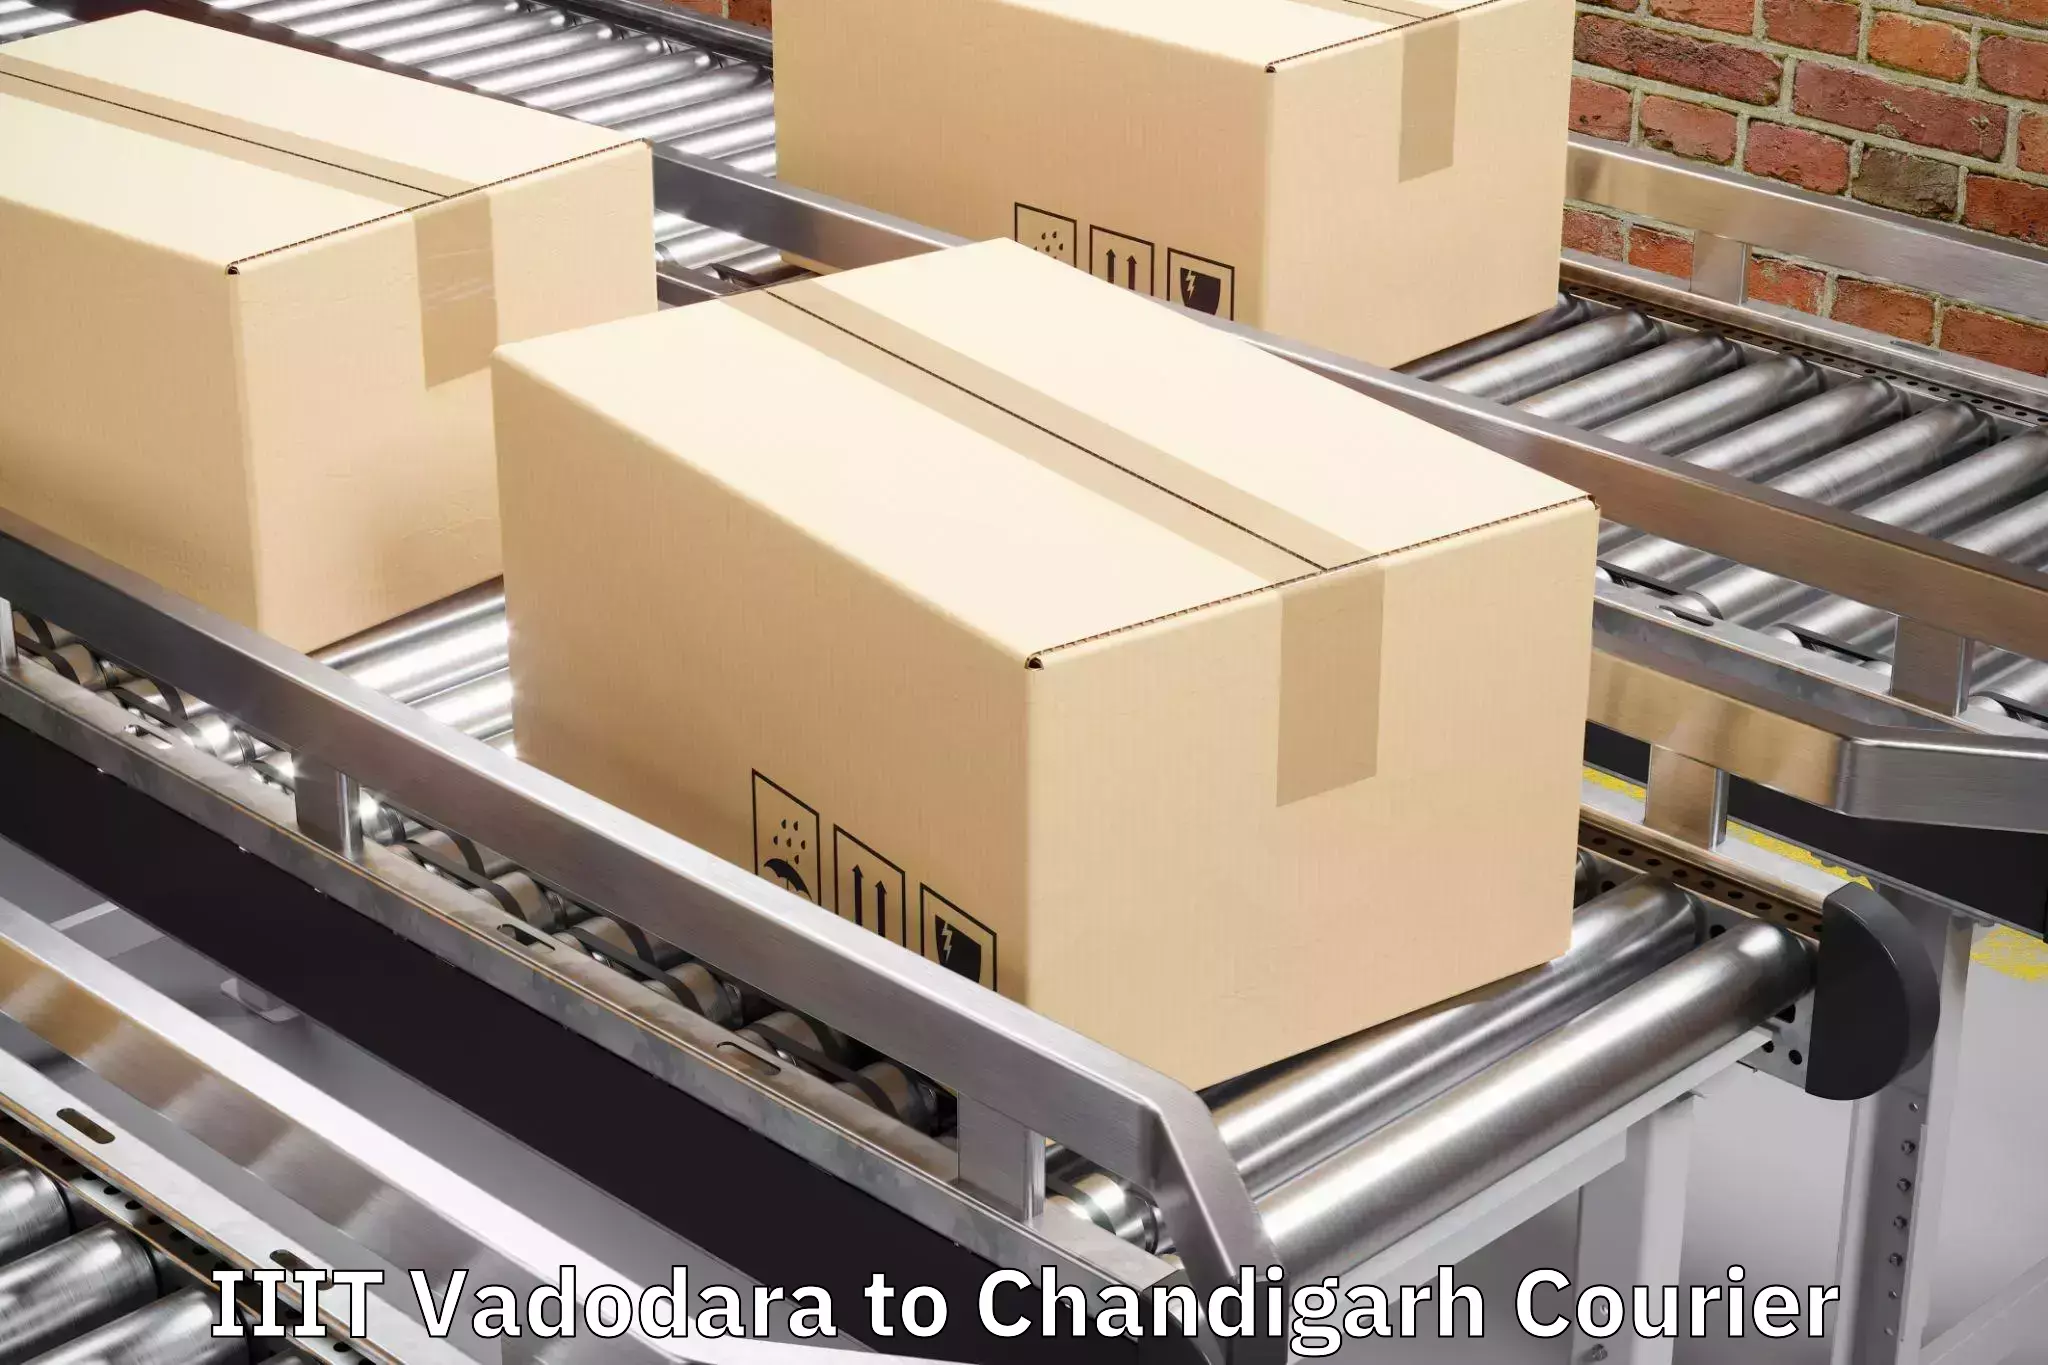 Luggage transport company IIIT Vadodara to Panjab University Chandigarh